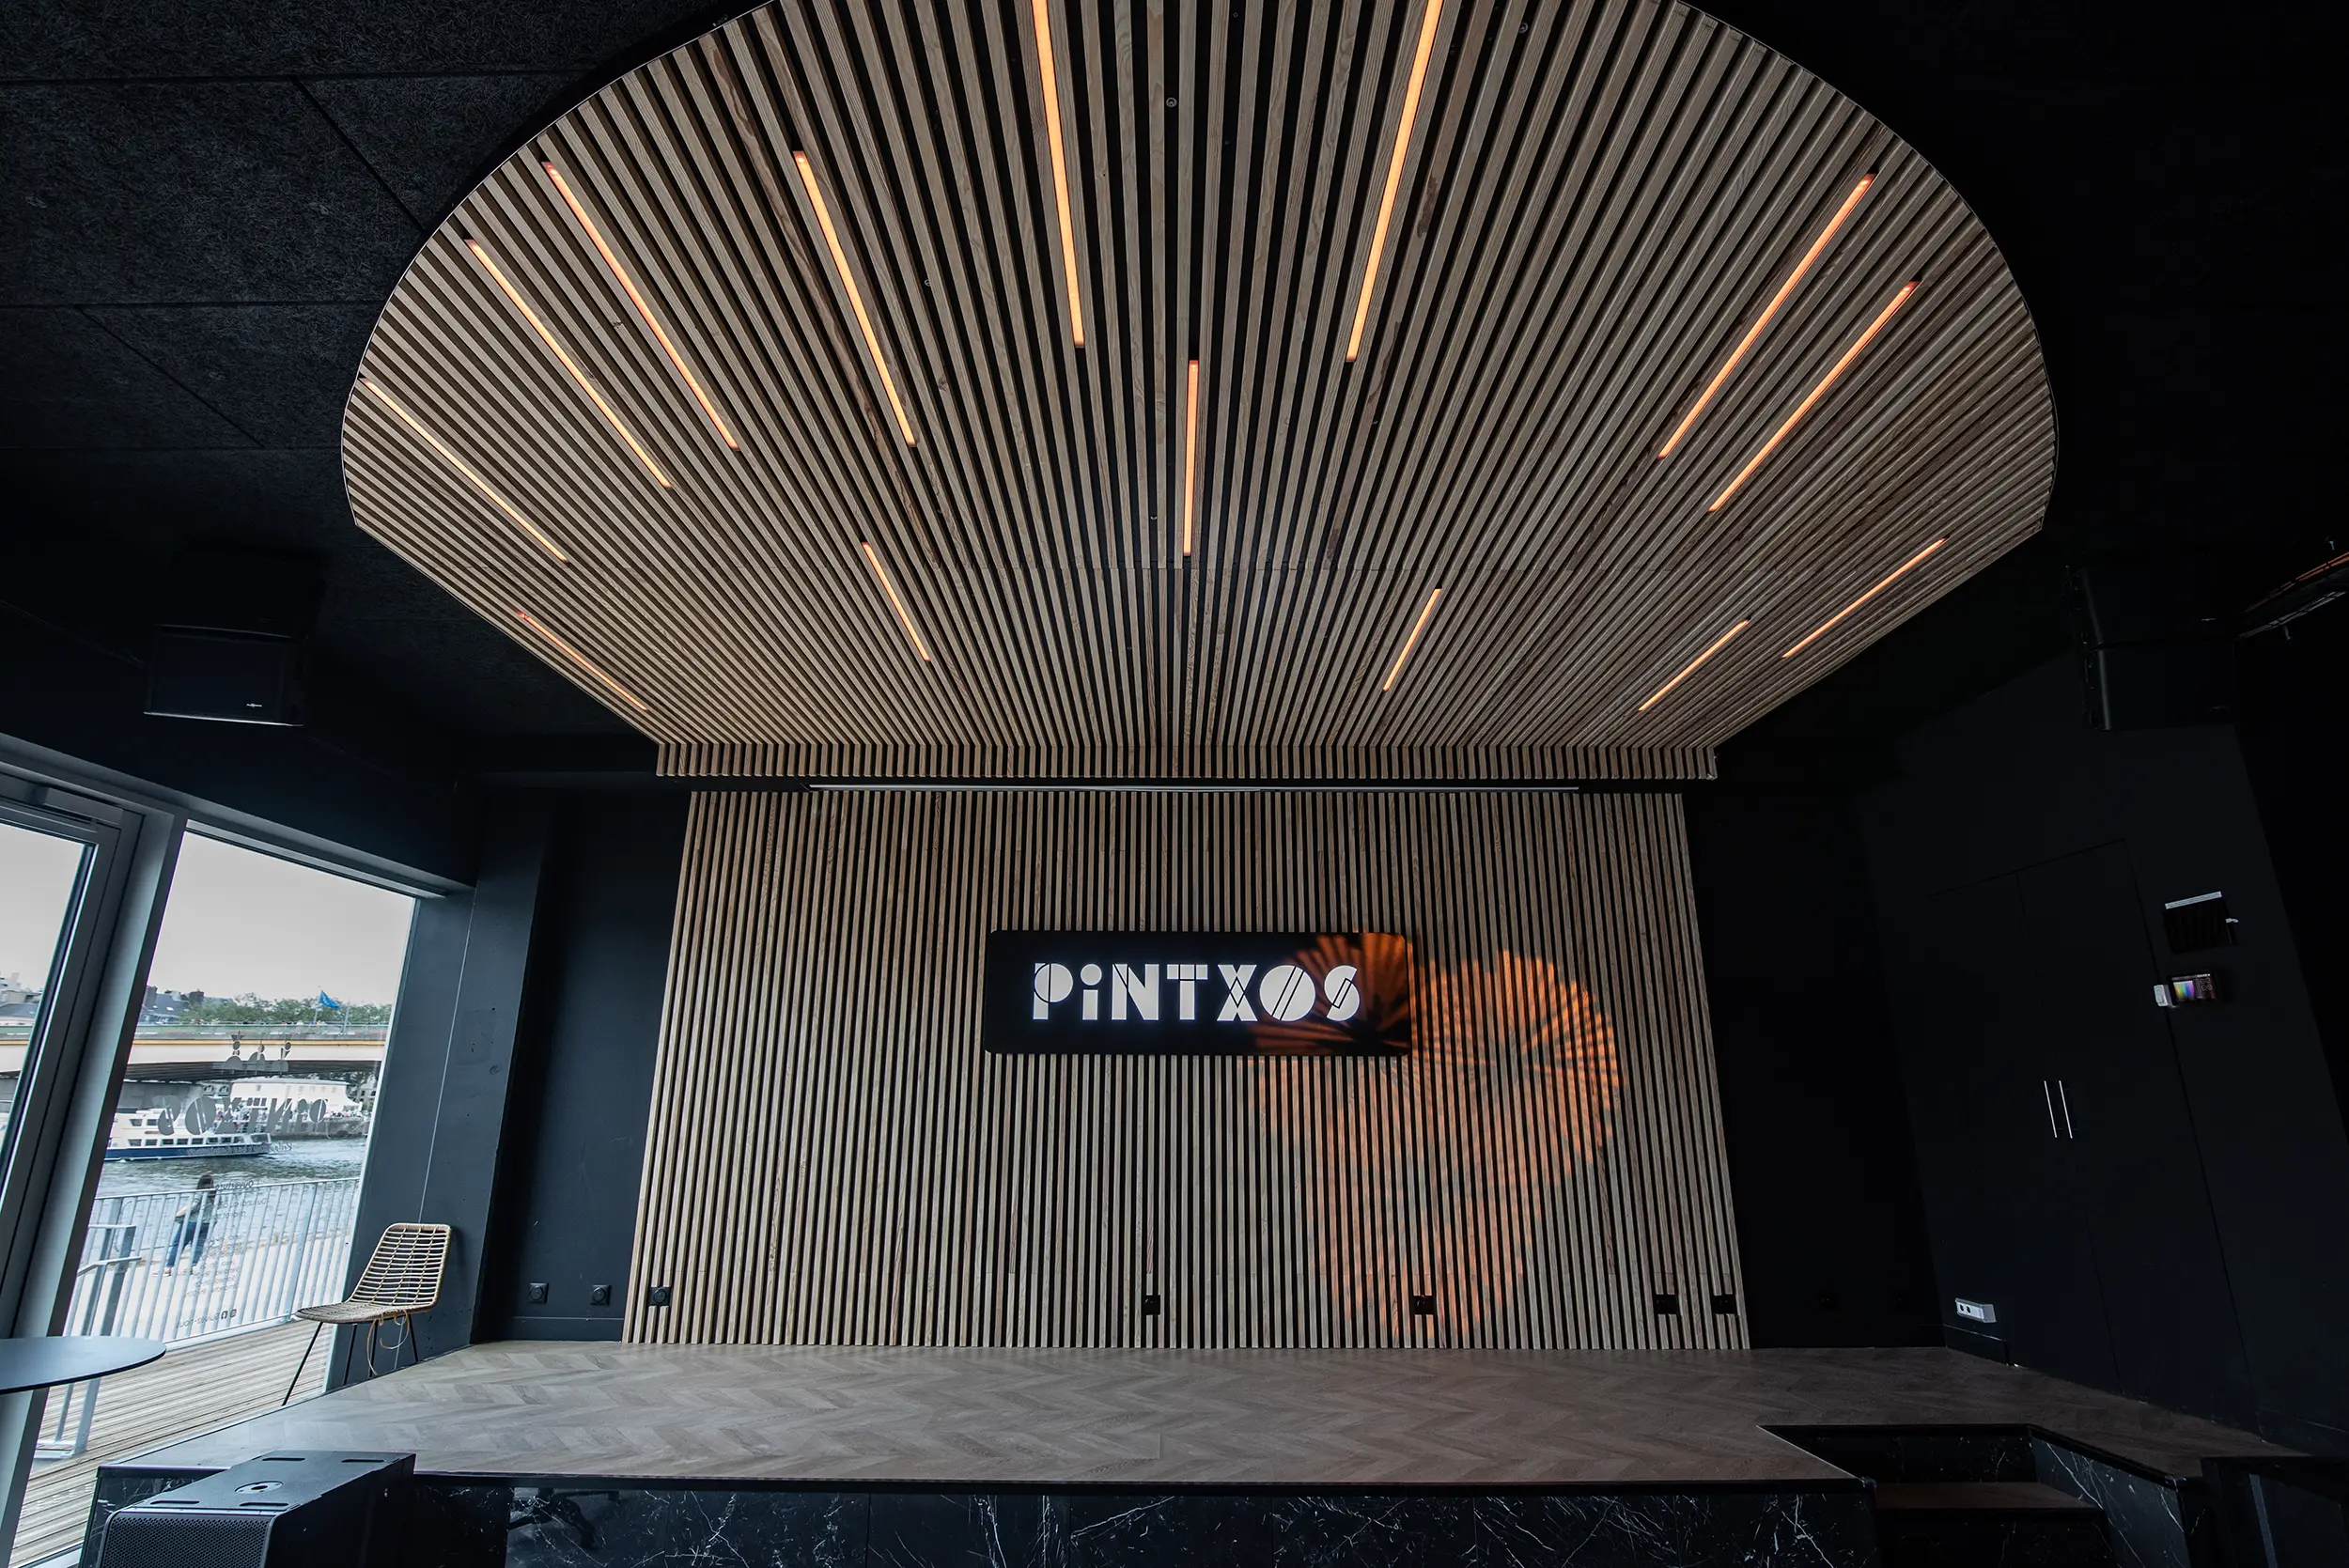 Leds et murs en bois du Pintxos. C'est un bar restaurant à Rouen aménagé en son et lumière par le Groupe Silam.